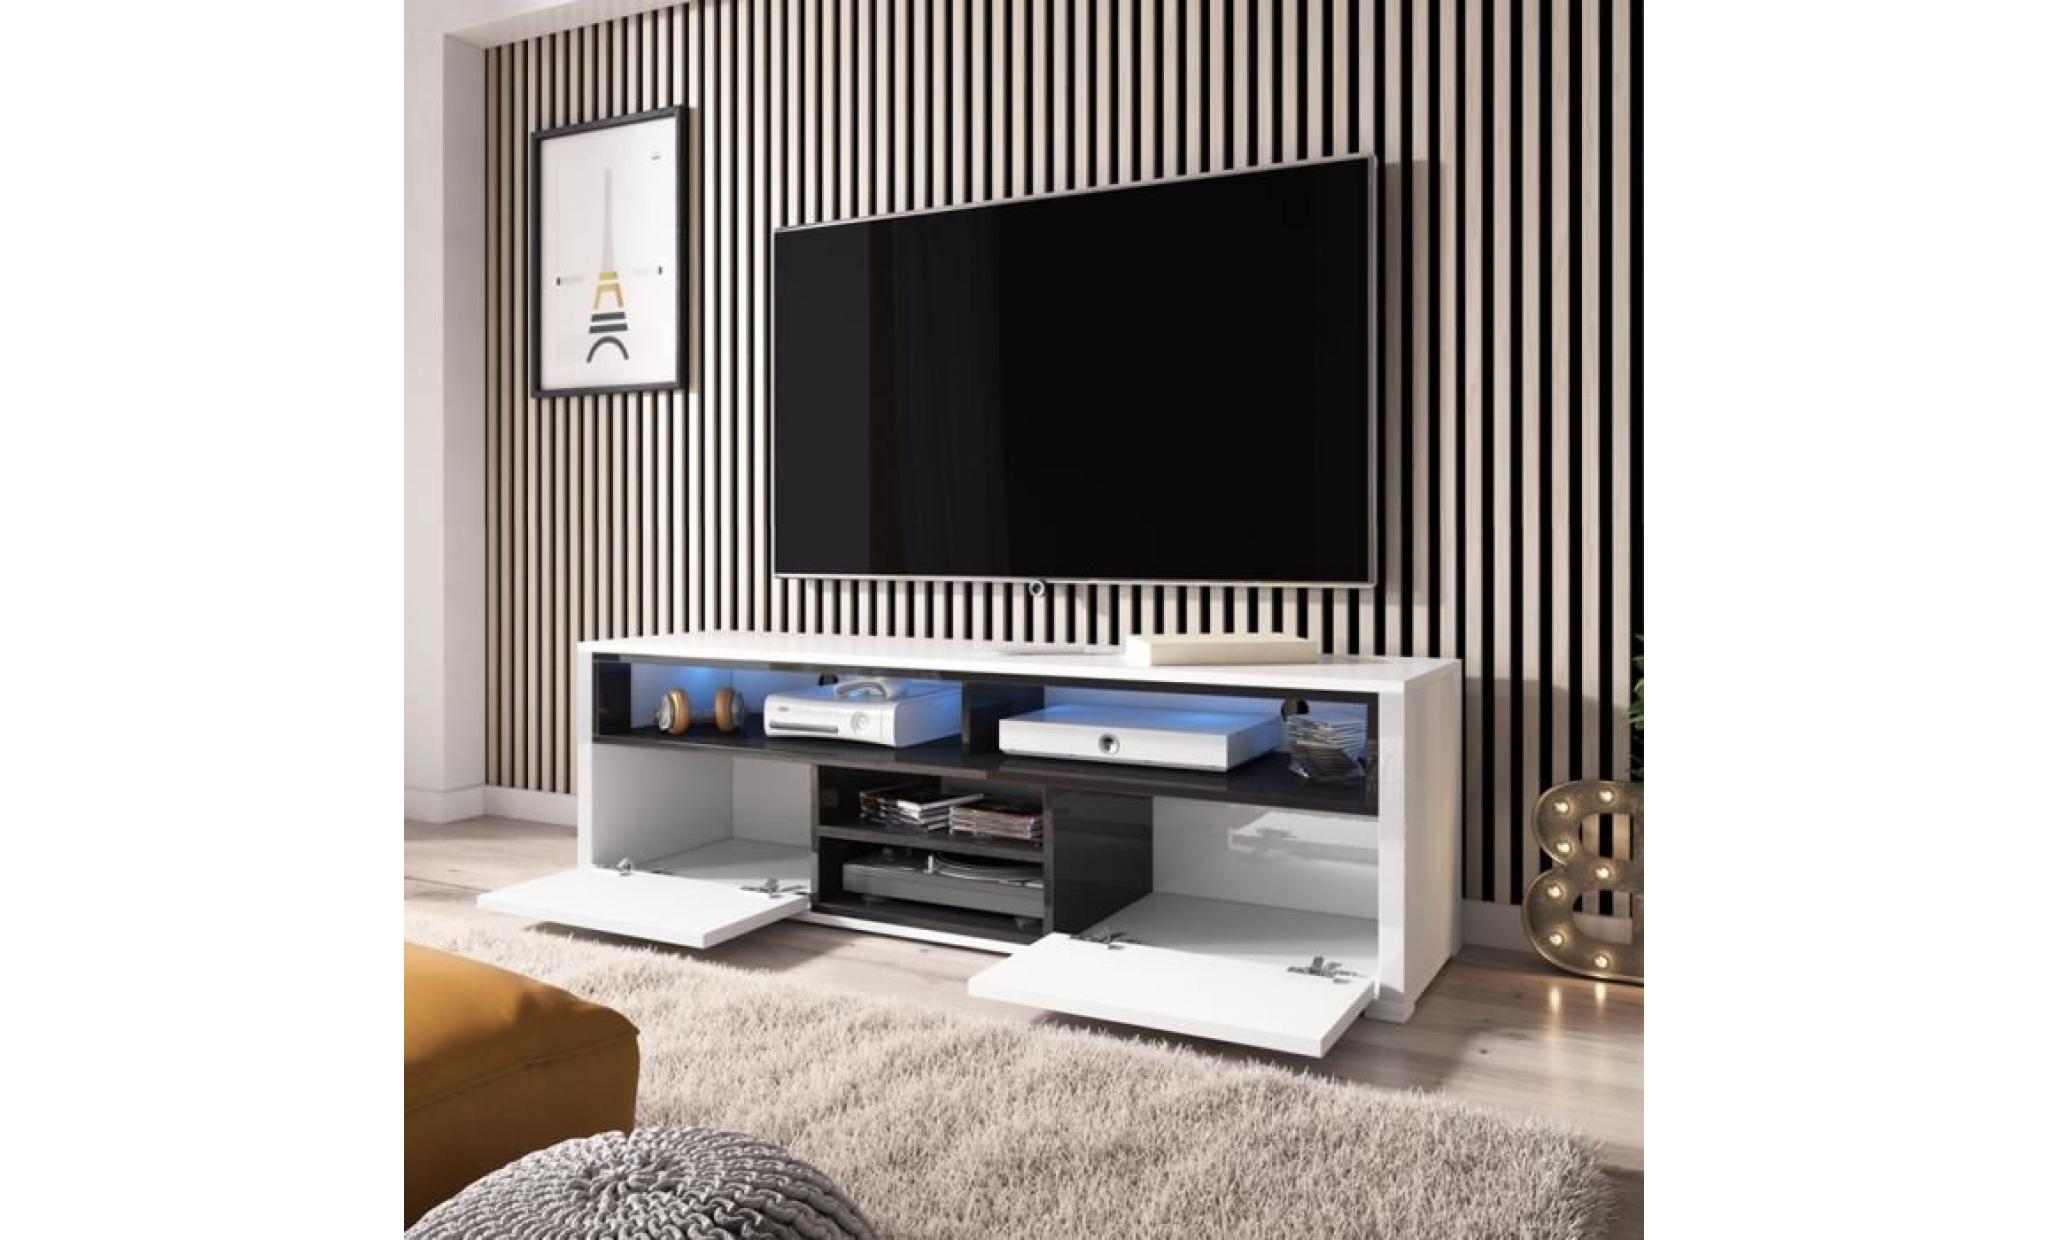 meuble tv / meuble de salon   mario   137 cm   blanc mat / noir brillant   avec led   4 niches ouvertes   2 compartiments fermés pas cher